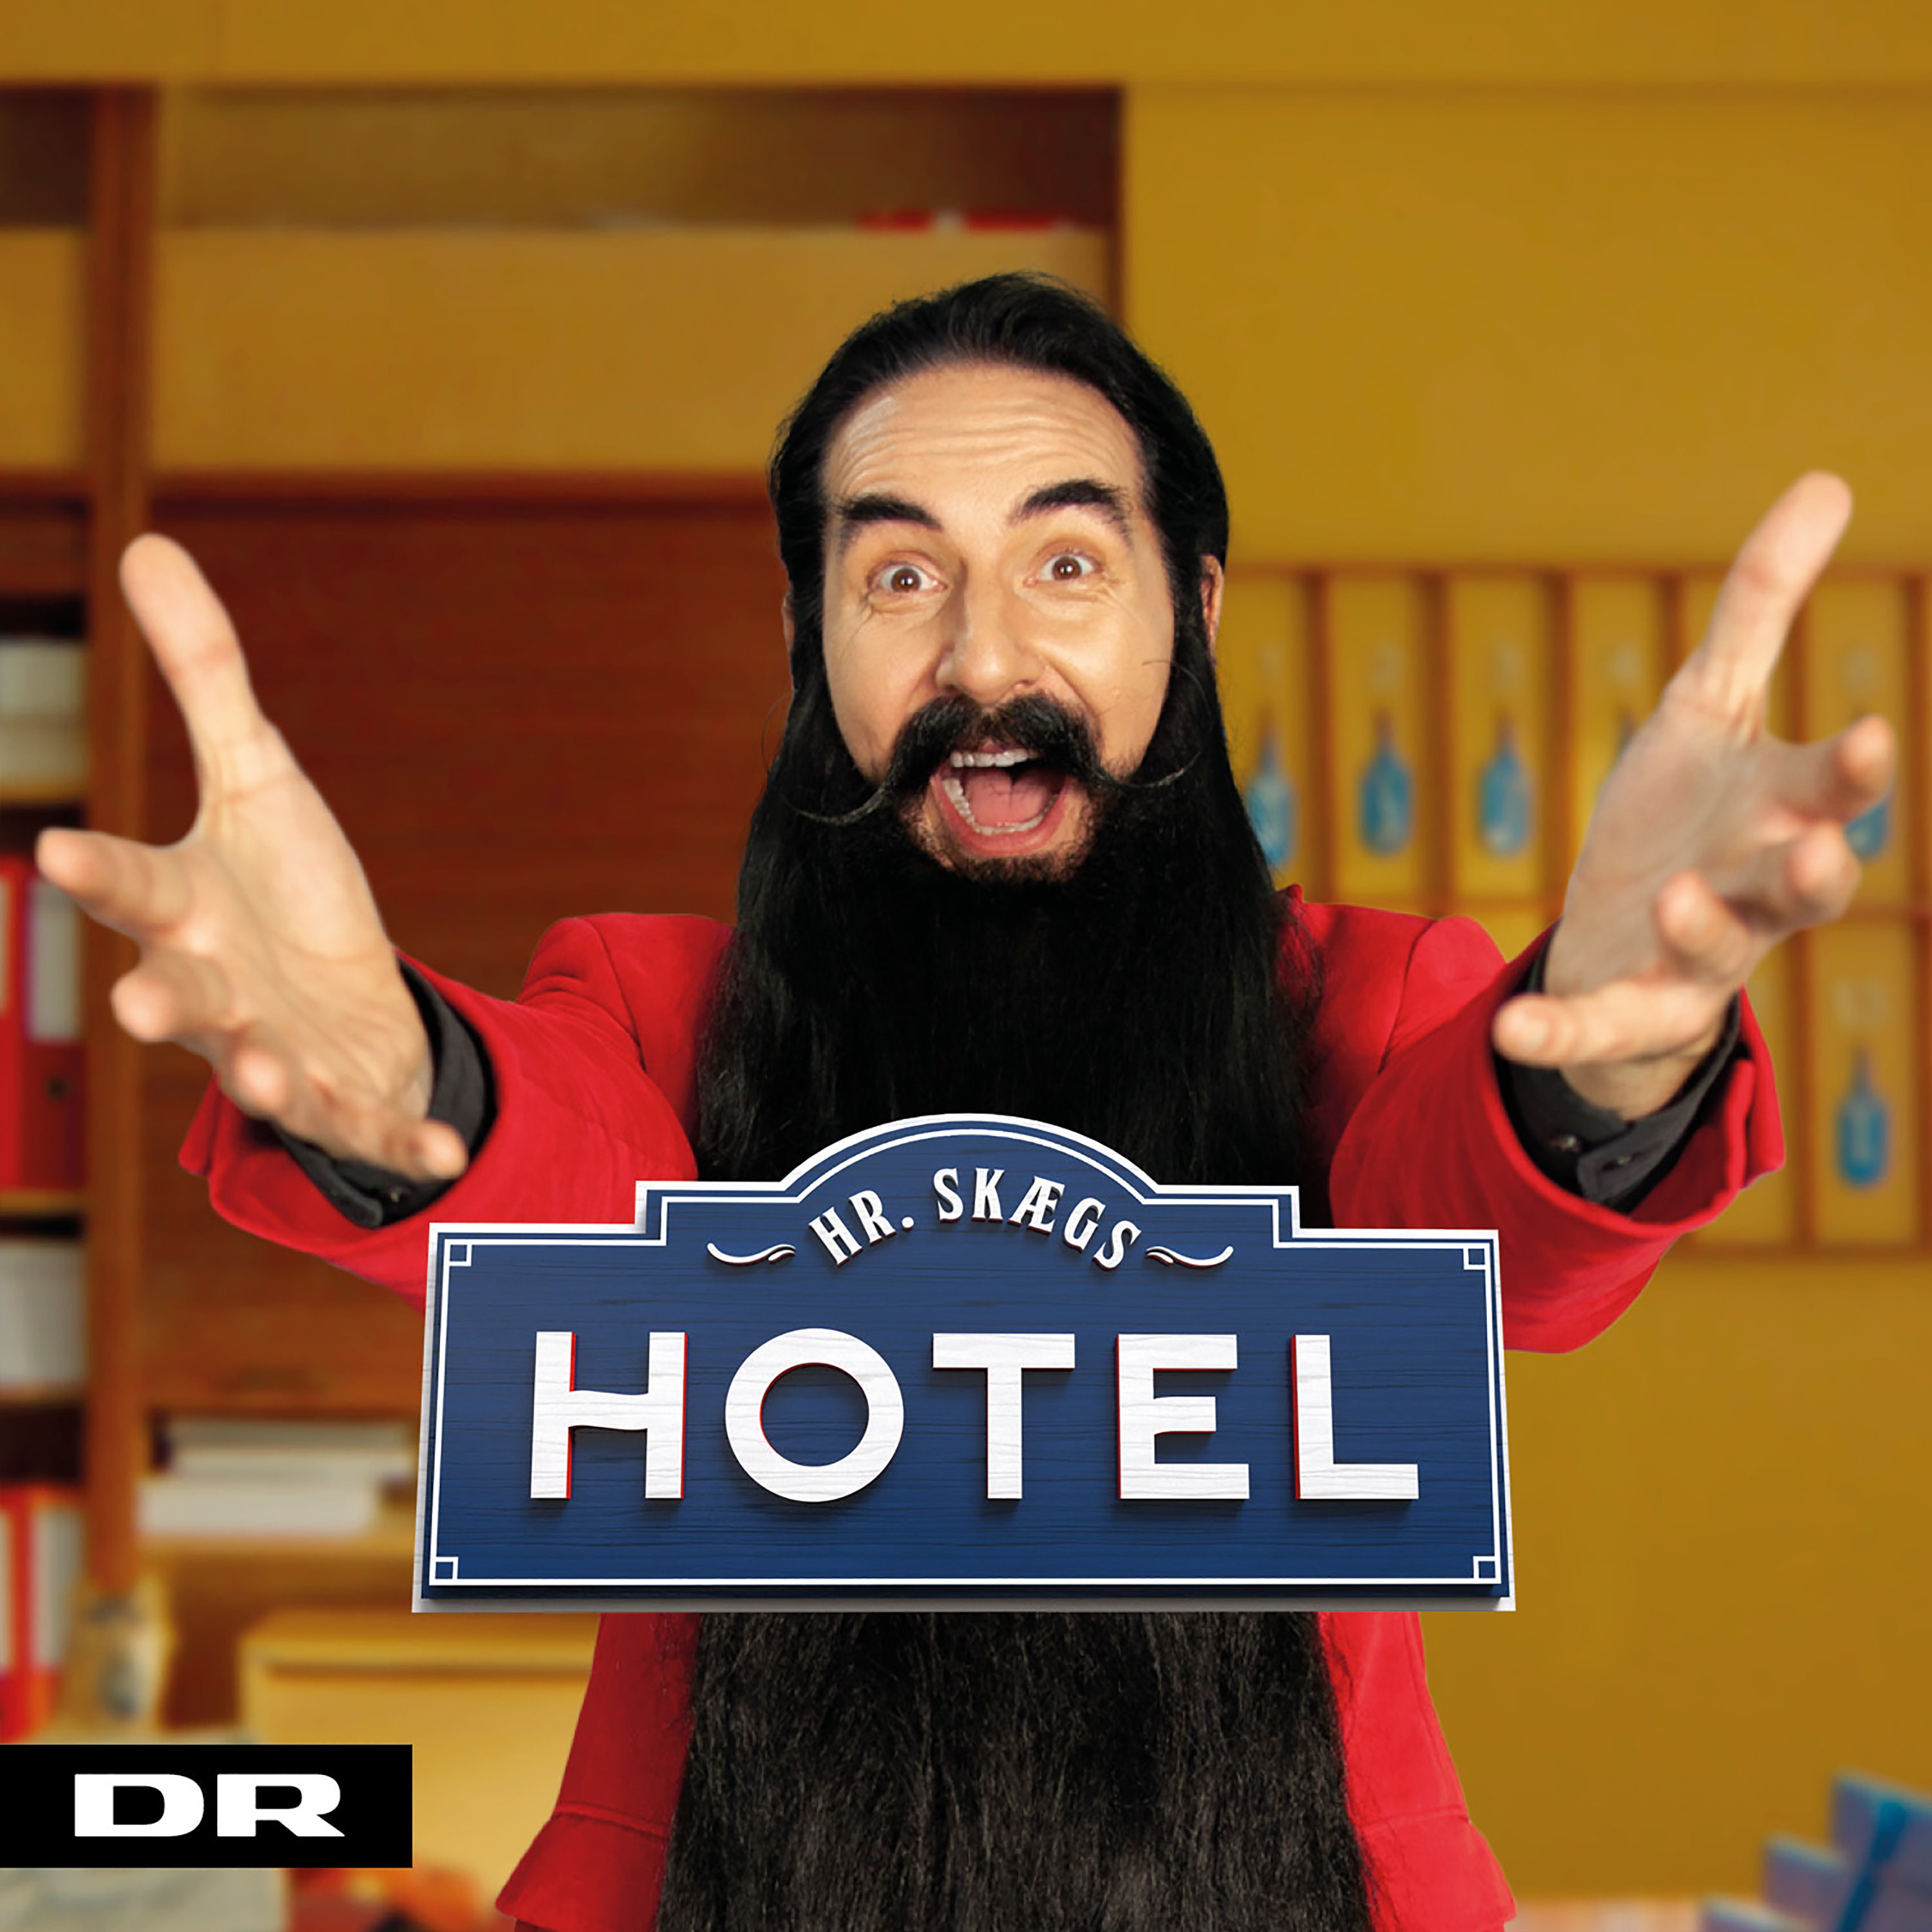 Hr. Skæg - Hr. Skægs Hotel - CD